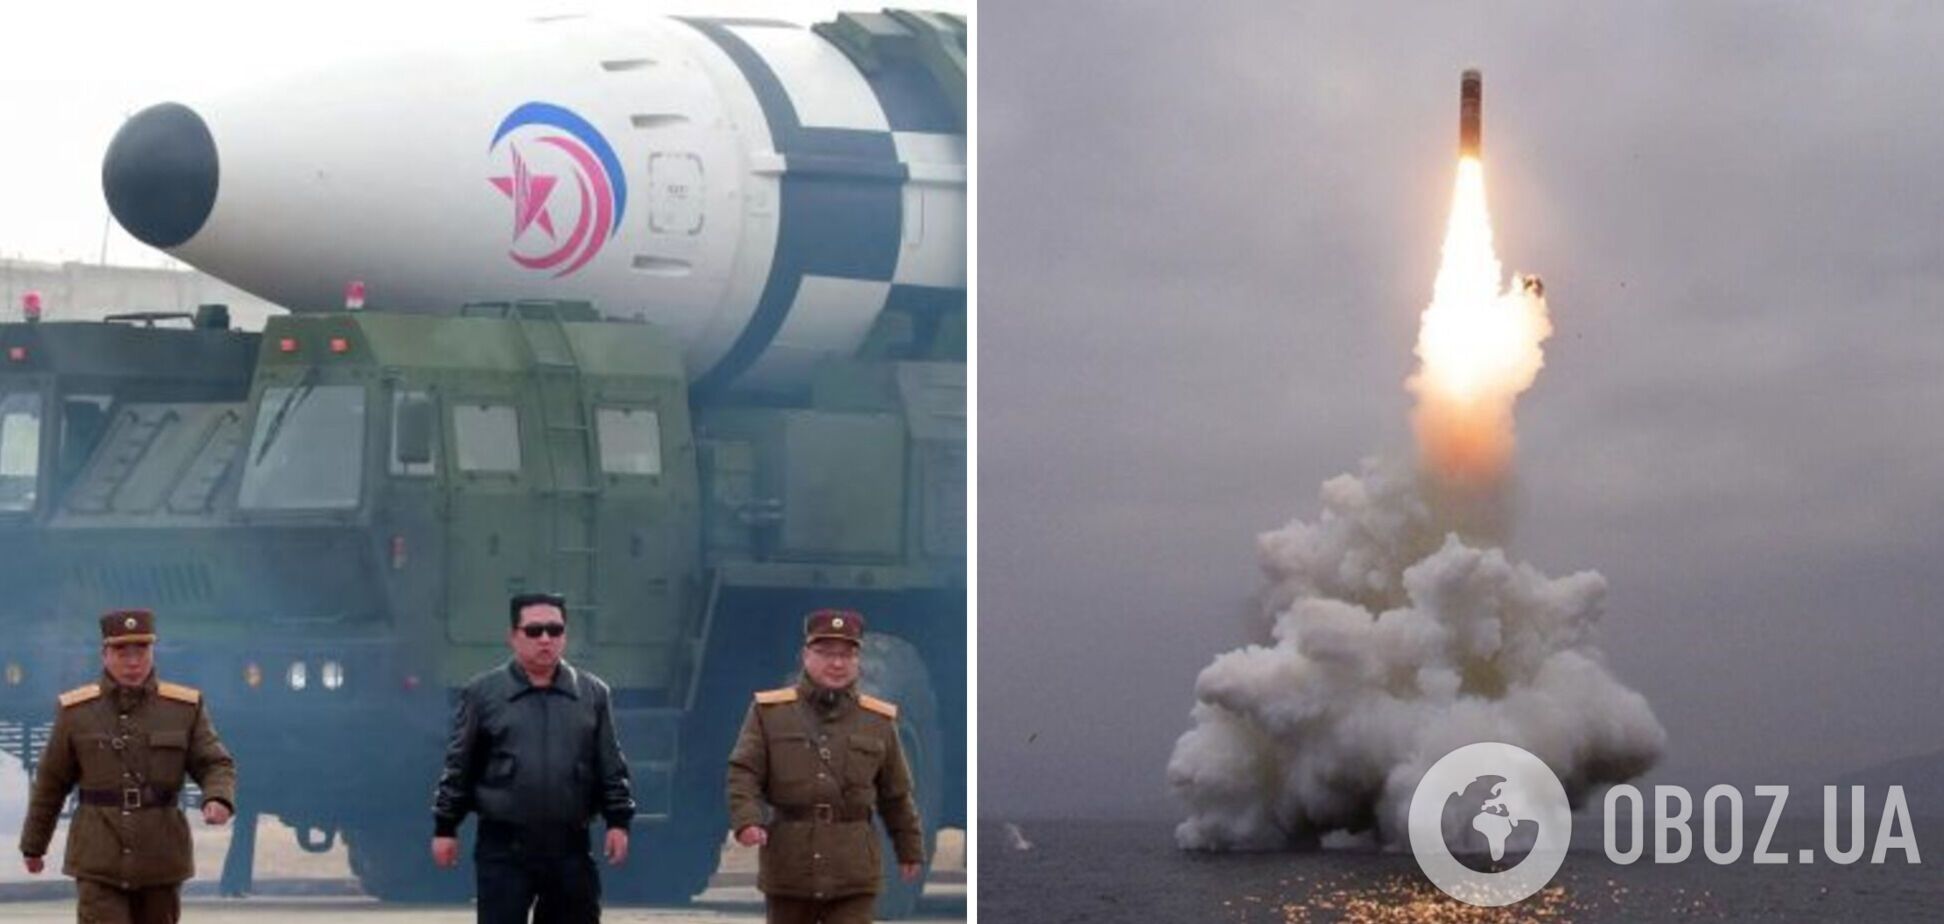 КНДР выпустила в сторону Японского моря баллистическую ракету, пока в Совбезе ООН обсуждали ее ядерные испытания